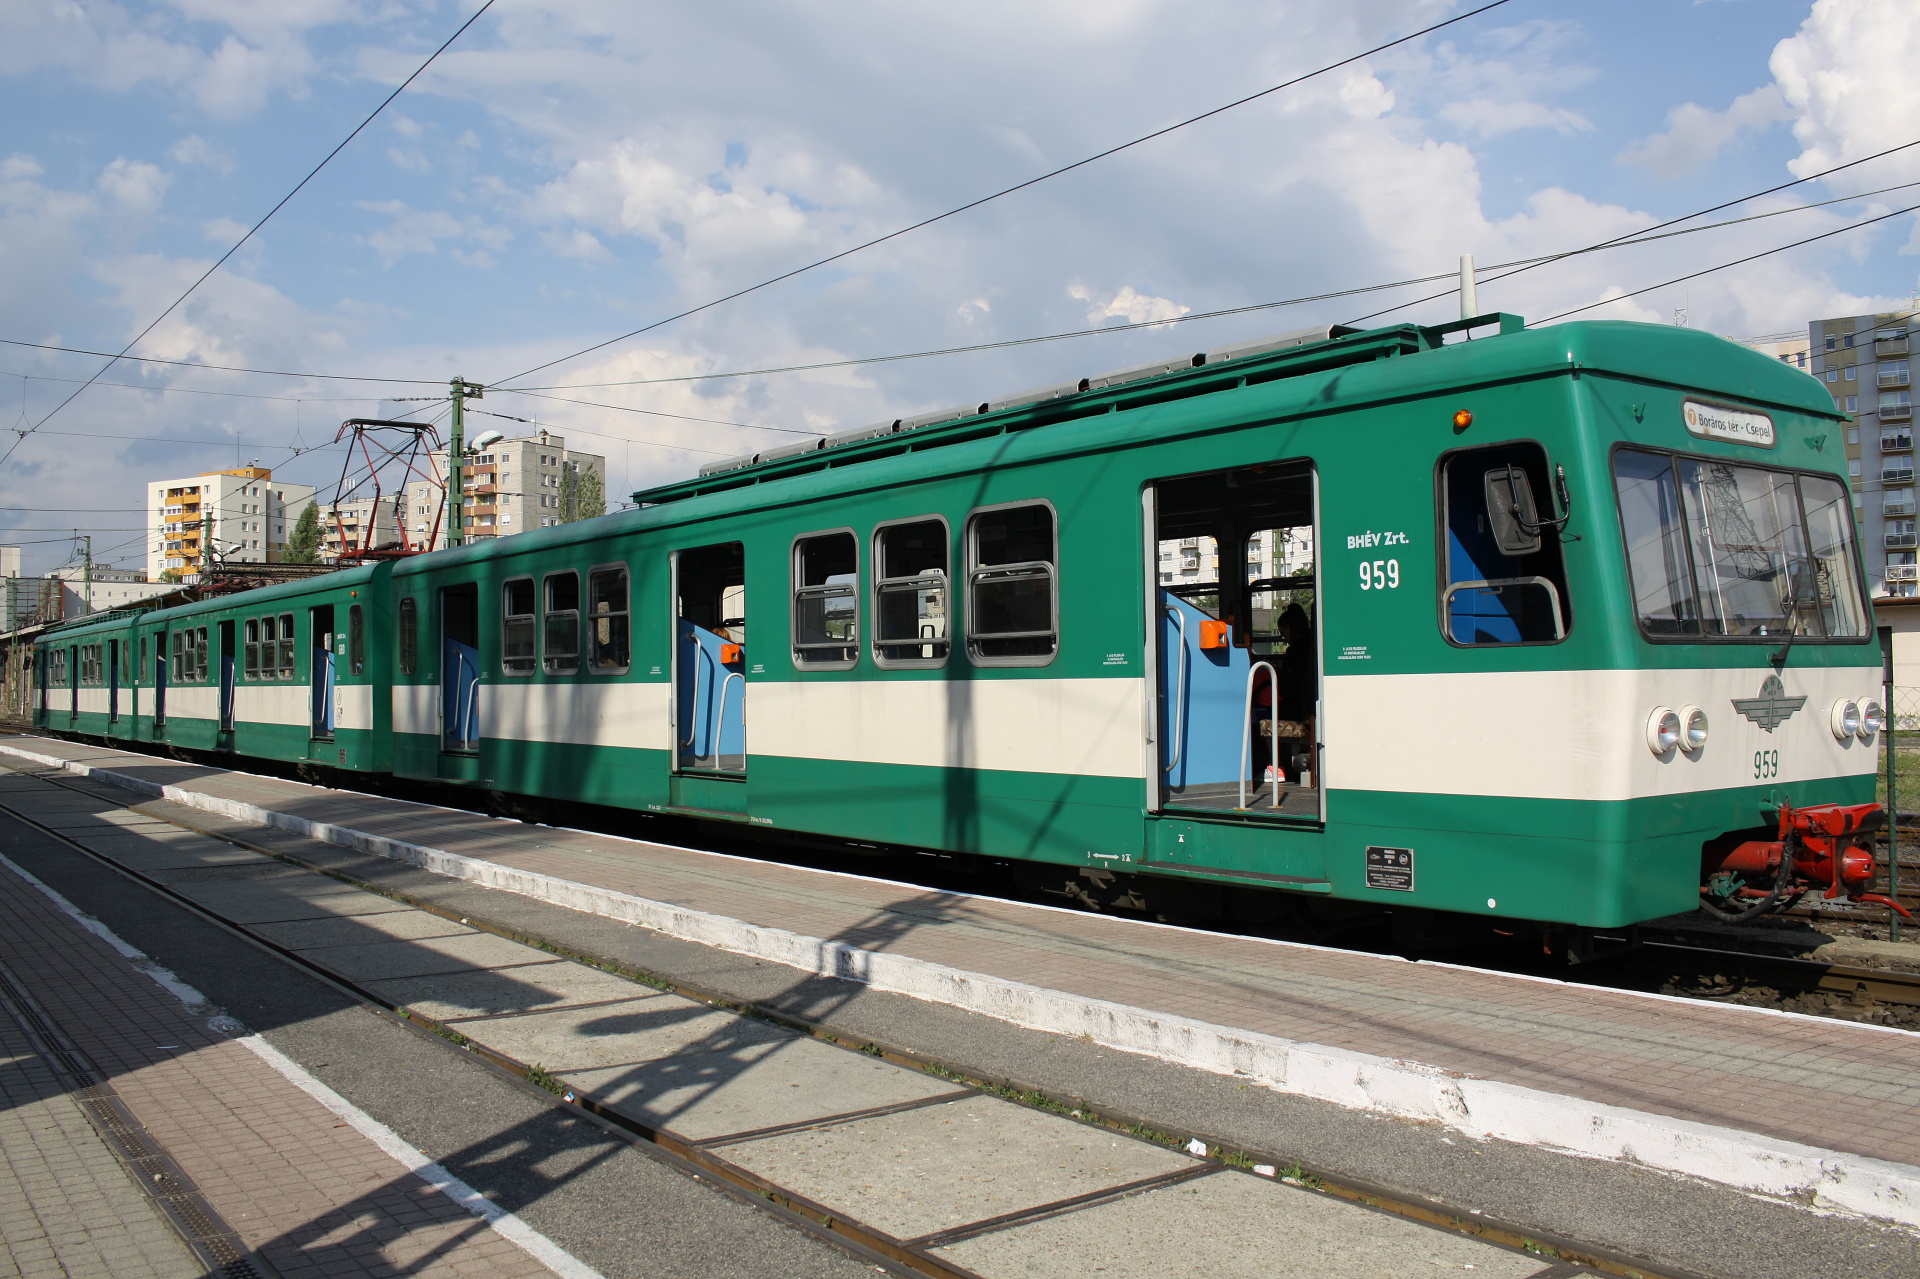 VEB LEW MXA 959 (Podróże » Budapeszt » Pojazdy » Pociągi i lokomotywy)